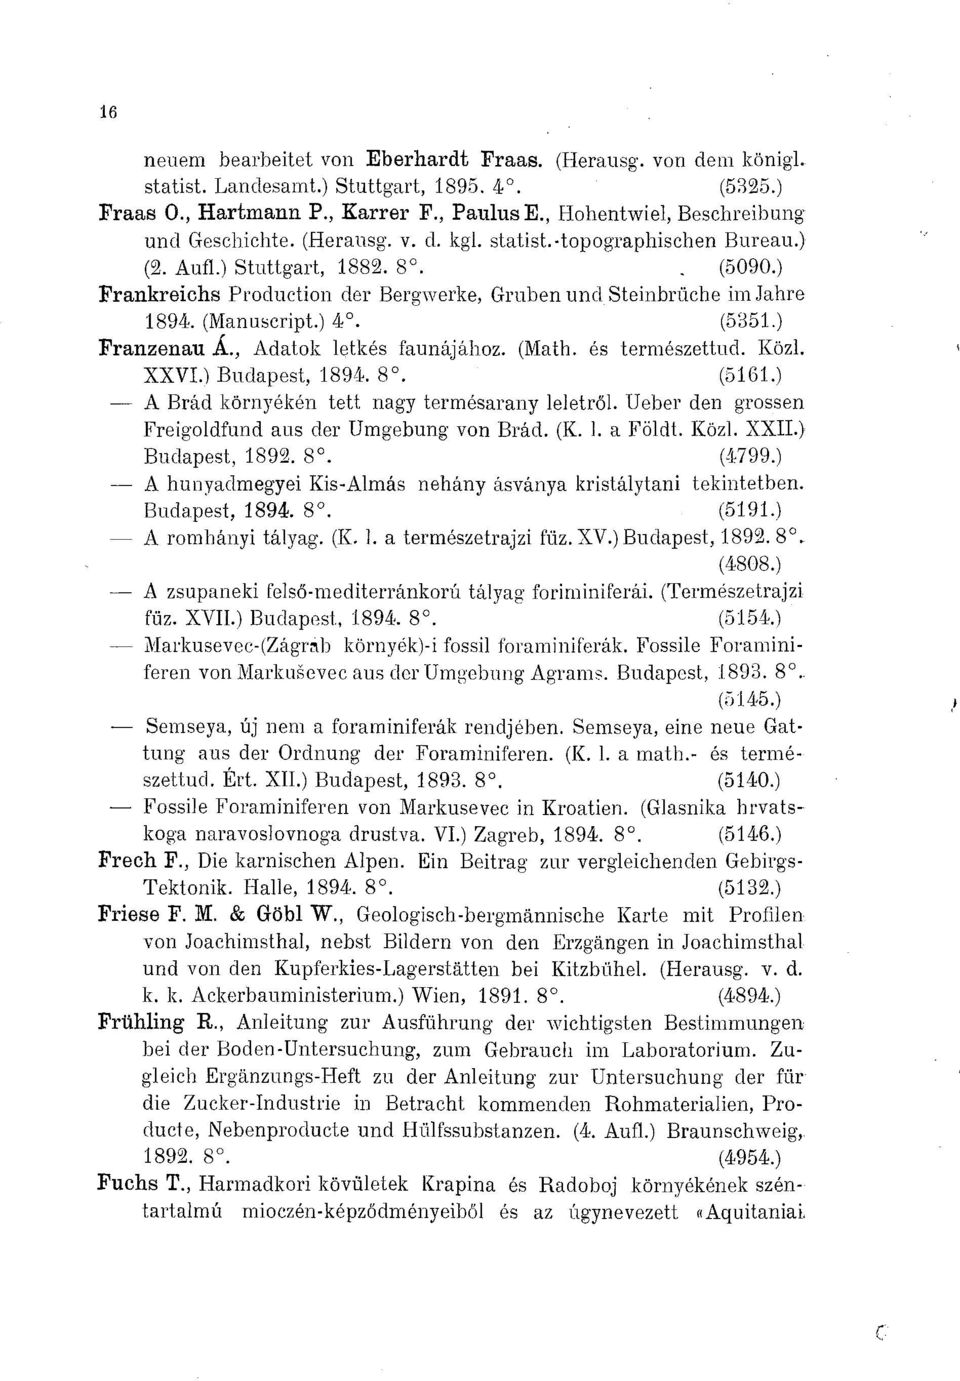 ) Frankreichs Production der Bergwerke, Gruben und Steinbrüche im Jahre 1894. (Manuscript.) 4. (5351.) Franzenau Á., Adatok letkés faunájához. (Math, és természettud. Közi. XXVI.) Budapest, 1894. 8.